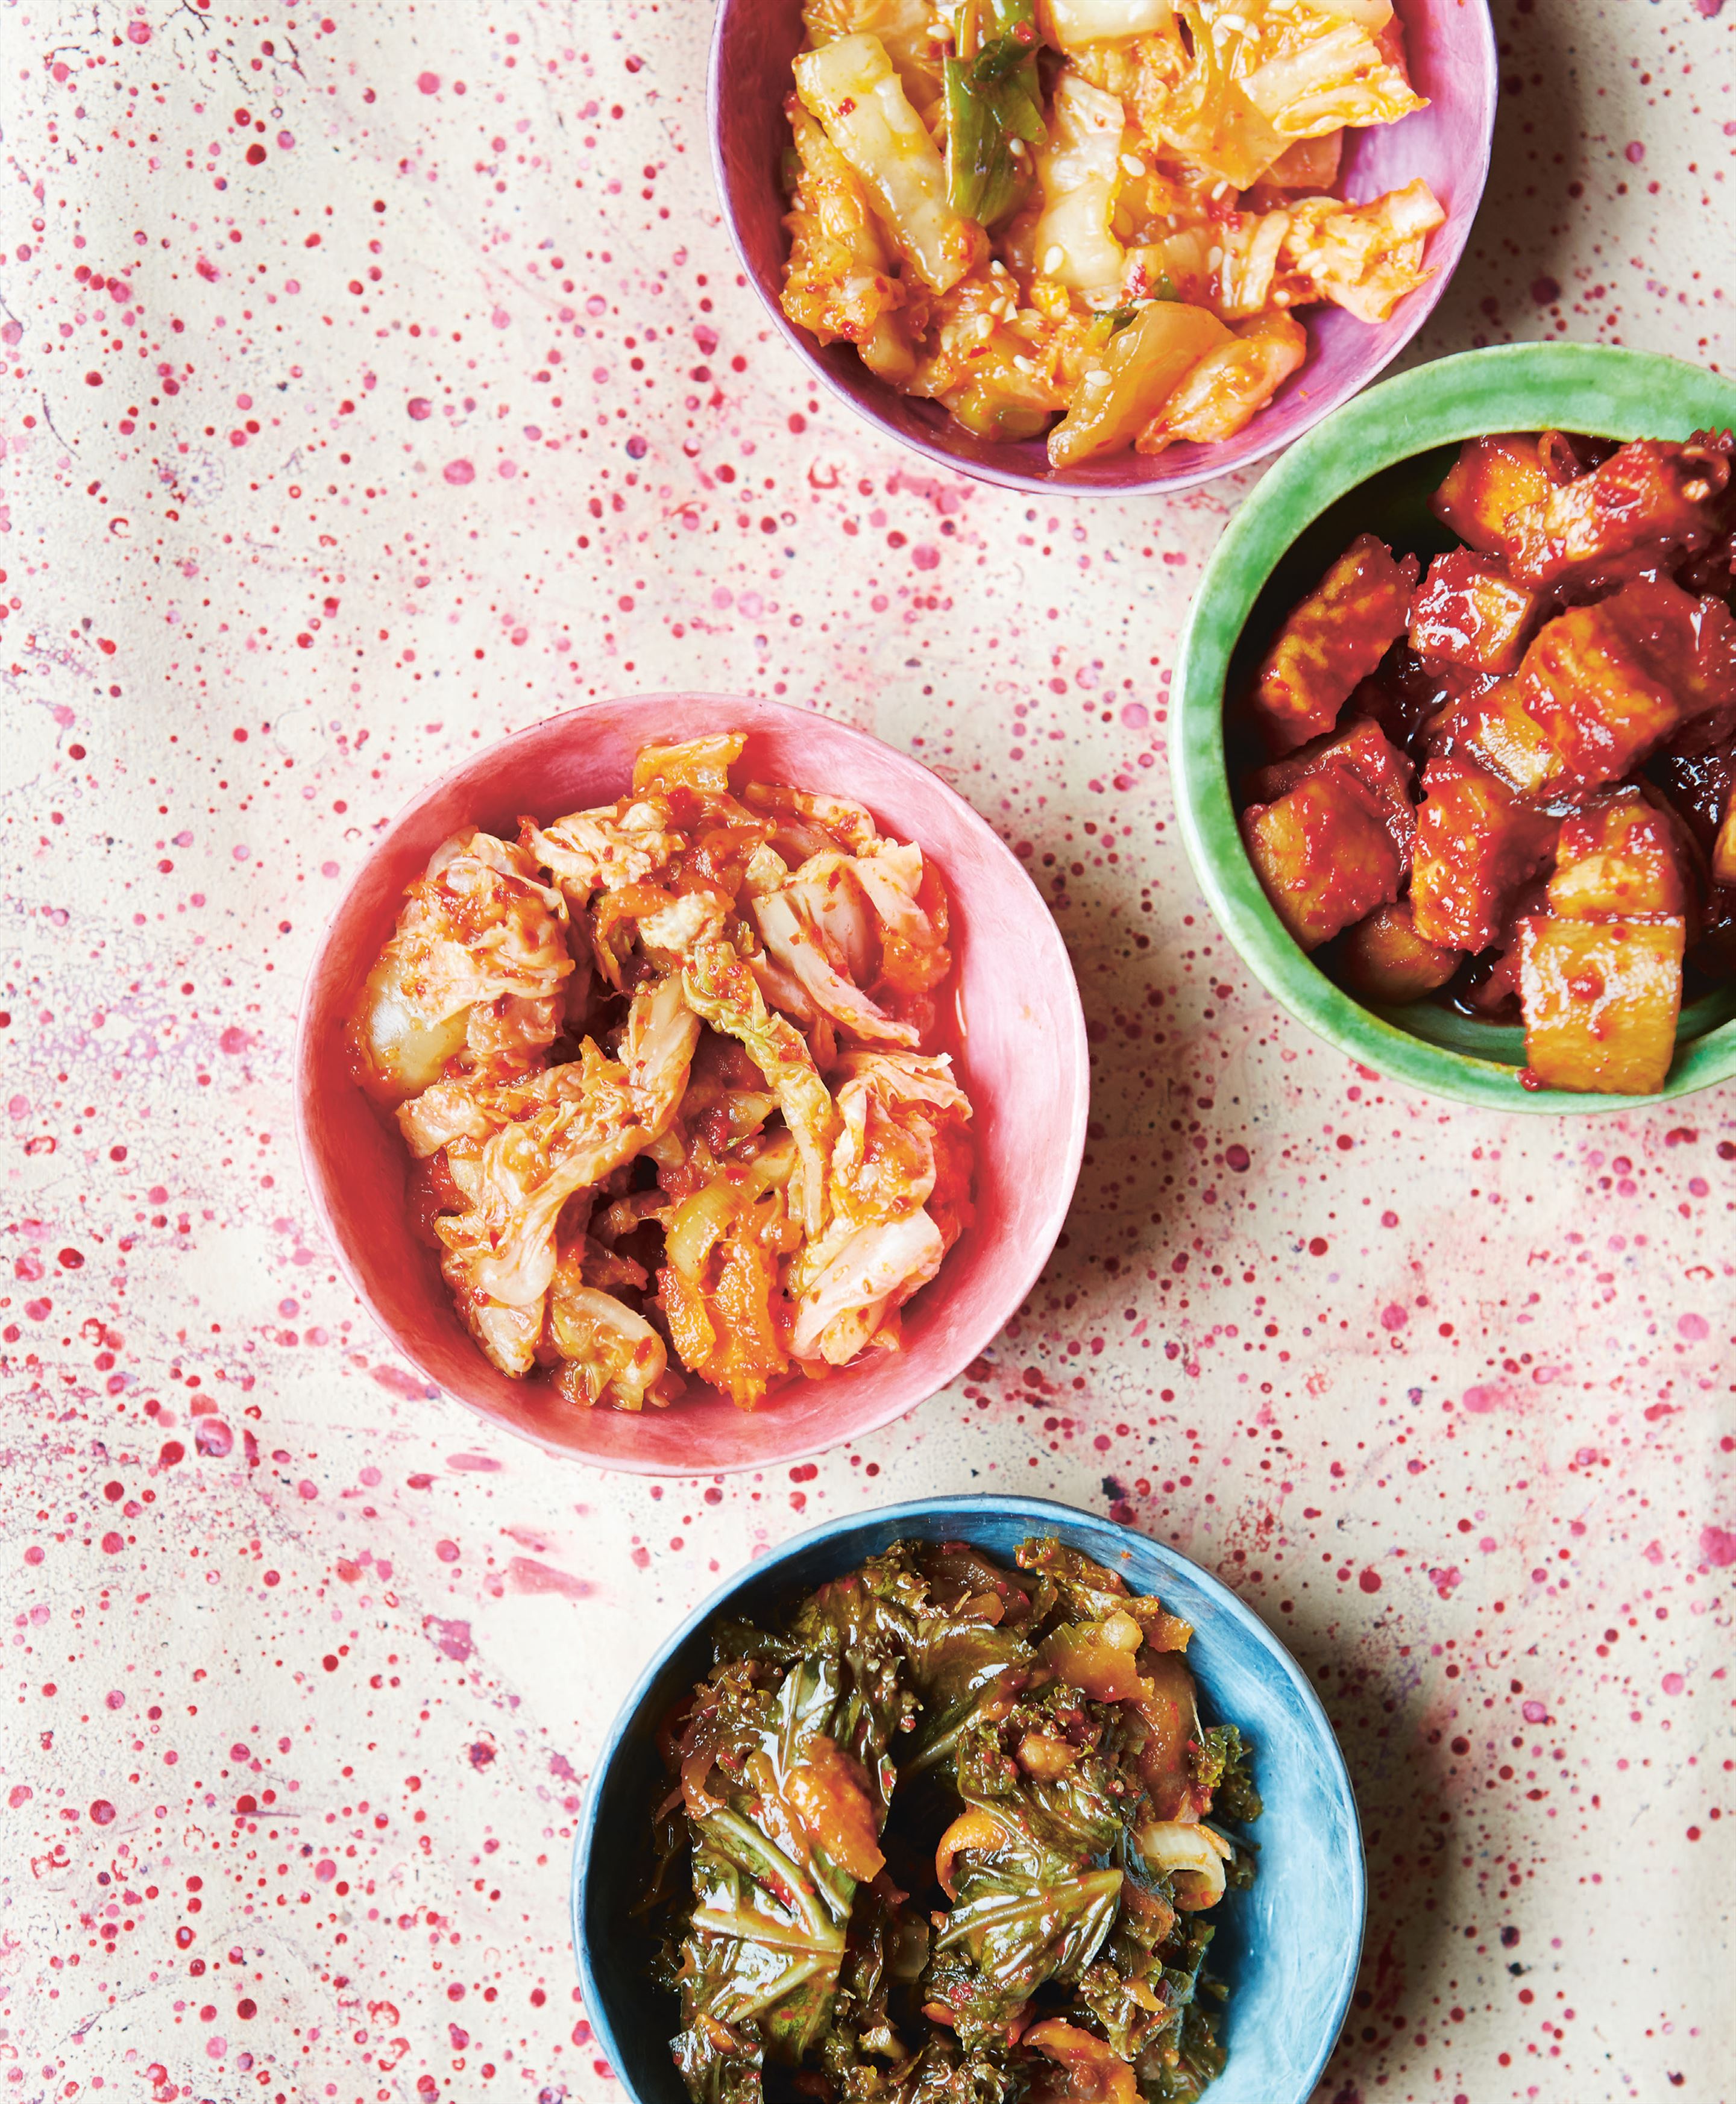 Daikon kimchi